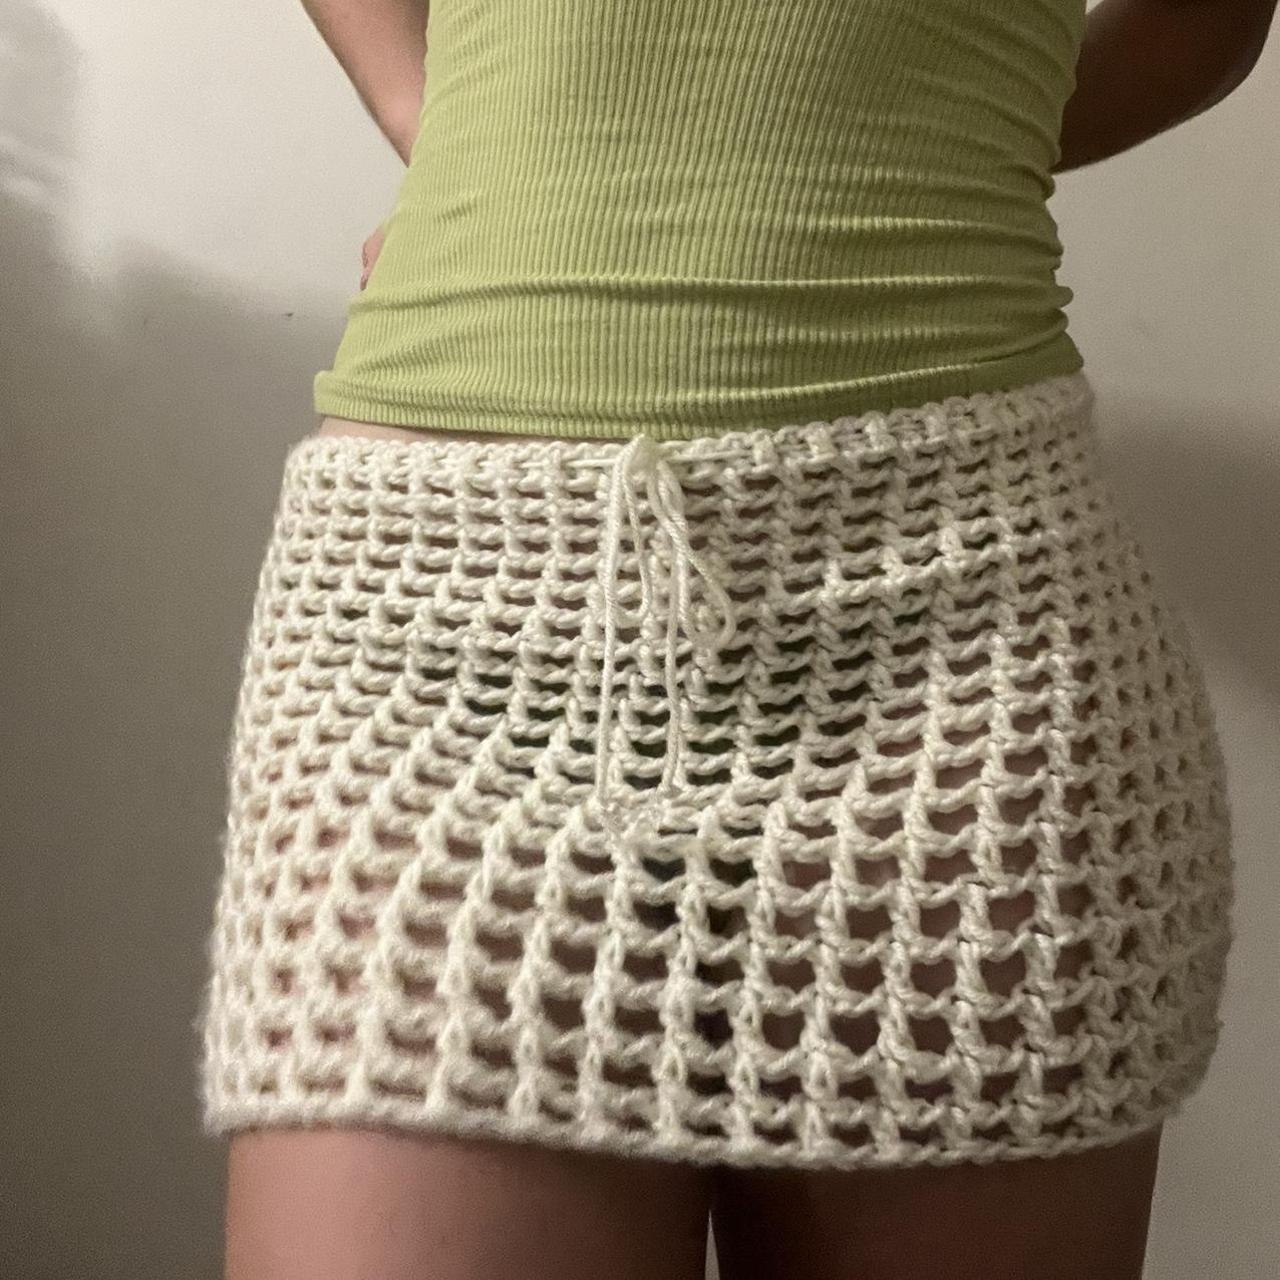 The ‘OG mini skirt’ A crochet mesh low/mid rise mini... - Depop